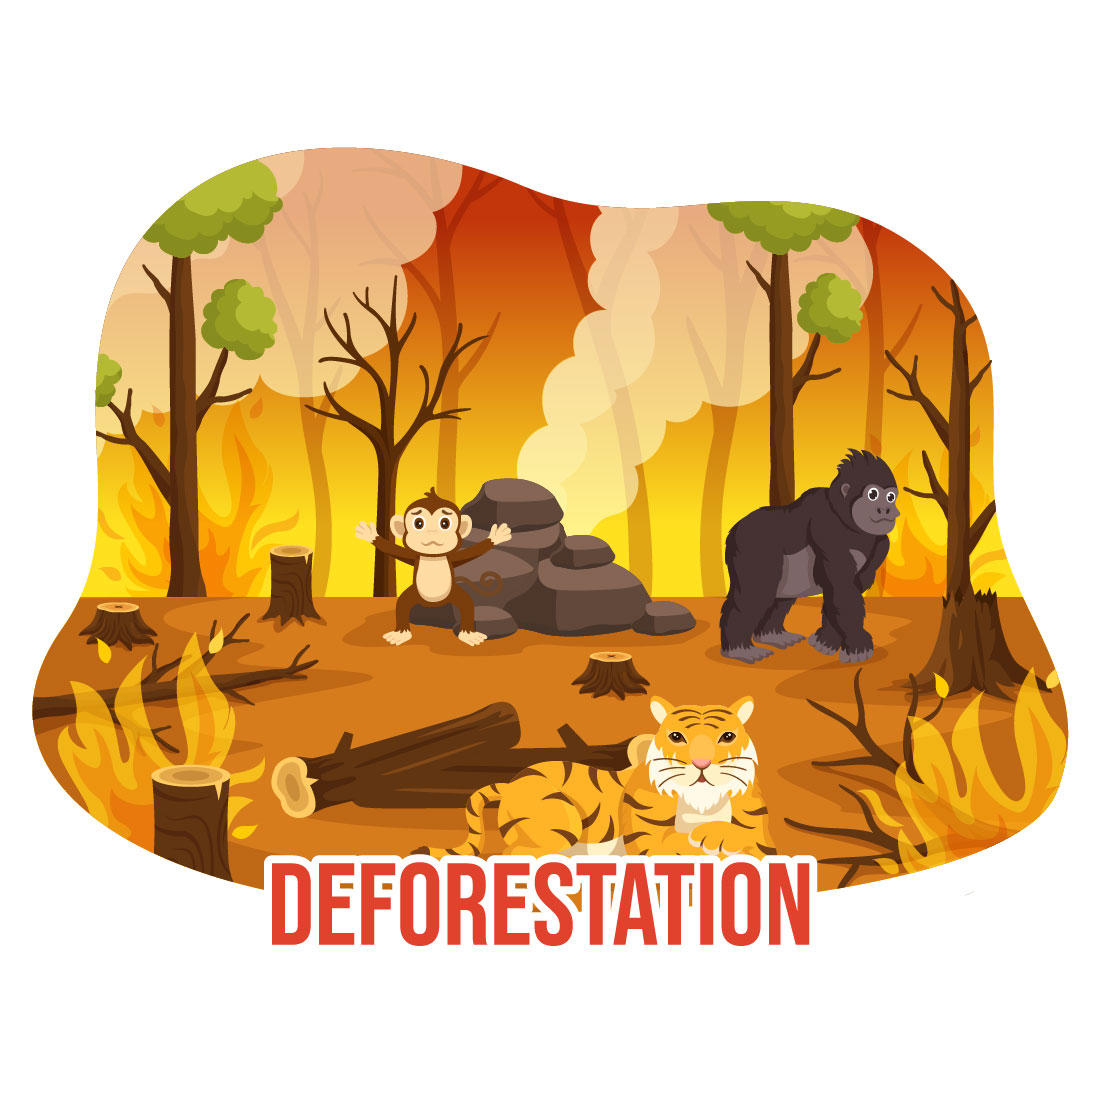 12 Deforestation Vector Illustration preview image.